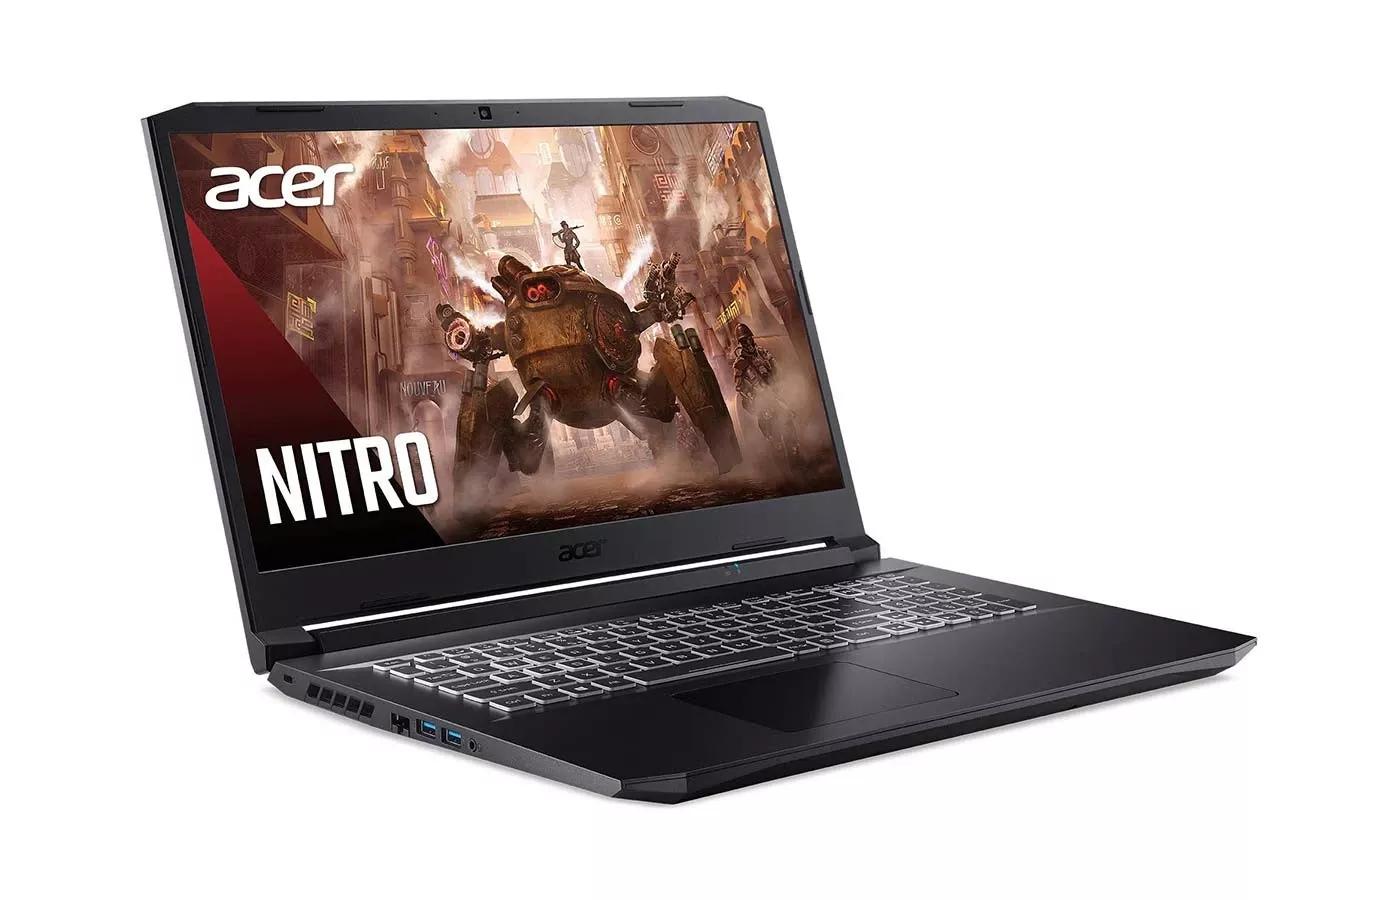 Acer Nitro 5 2021 AMD Ryzen 7 5800H | RTX 3070 | 8GB RAM | 1TB SSD | 15.6" FHD 144Hz display | 1 Year Warranty